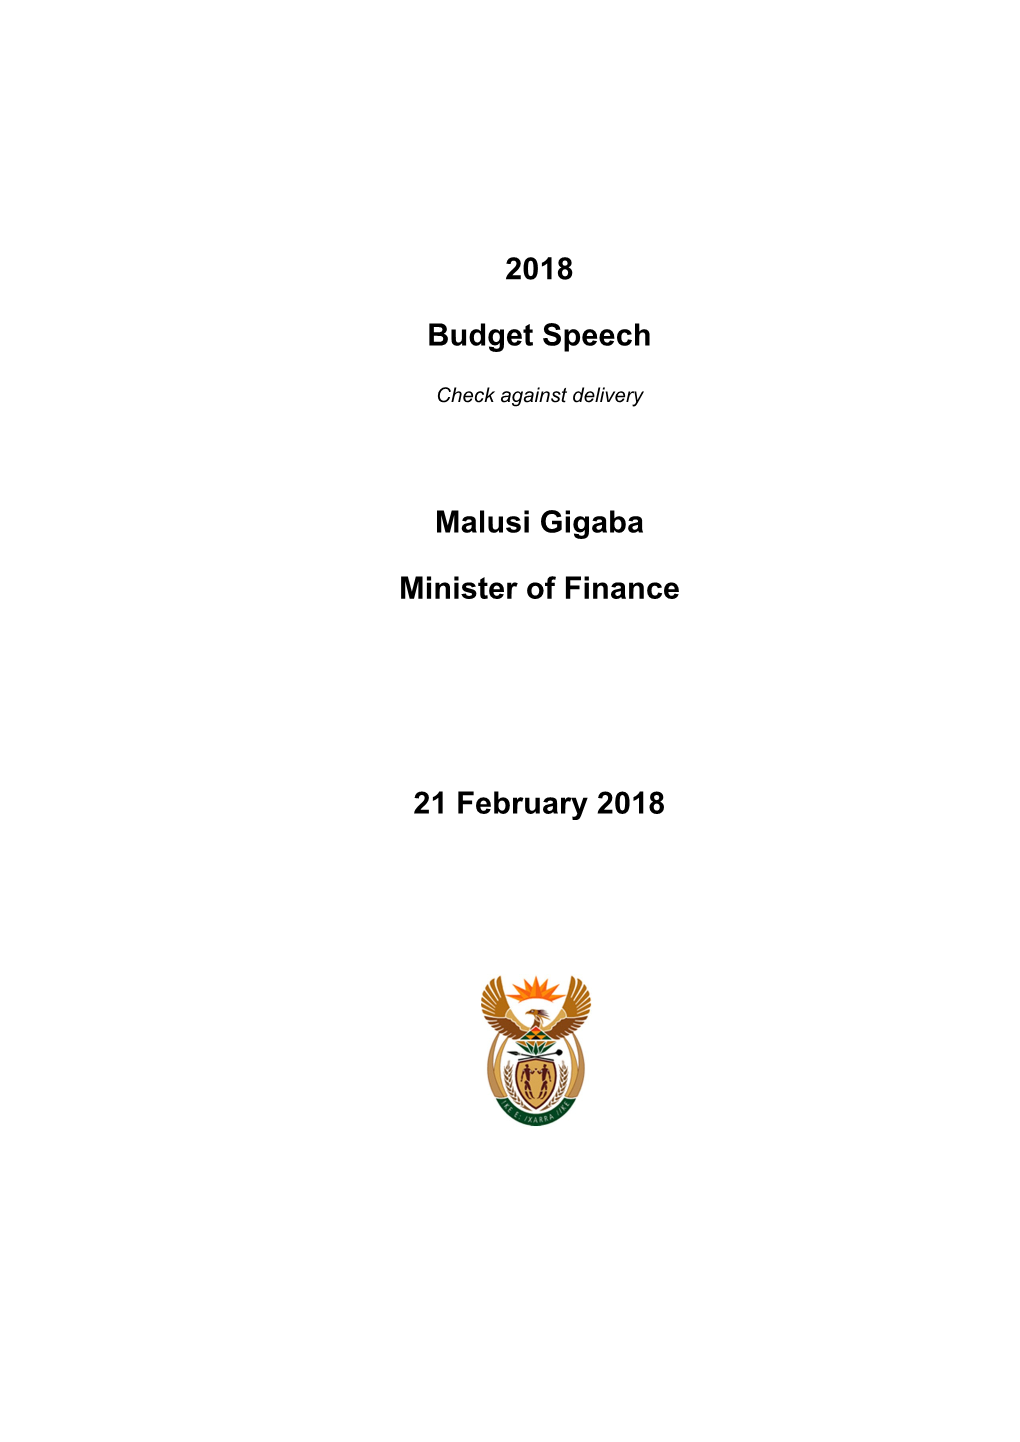 2018 Budget Speech Malusi Gigaba Minister of Finance 21 February 2018